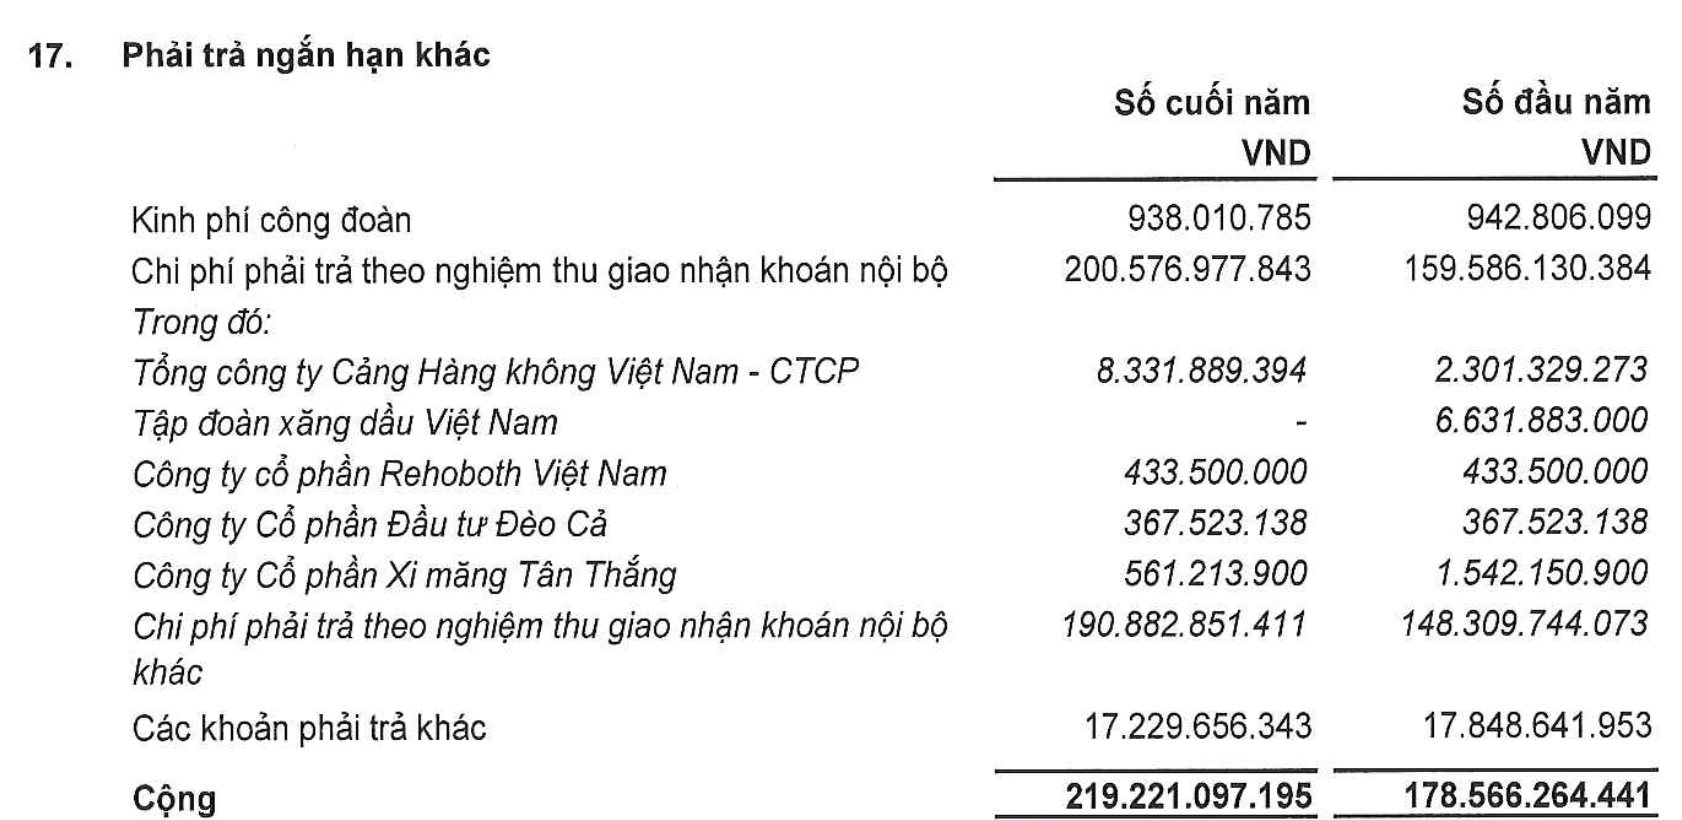 Bất ngờ cổ phiếu vừa tăng bốc đầu sau thông tin trúng gói thầu sân bay Long Thành: Sở hữu đất vàng trung tâm Hà Nội, nợ phải trả gấp 5 lần vốn chủ sở hữu - Ảnh 2.